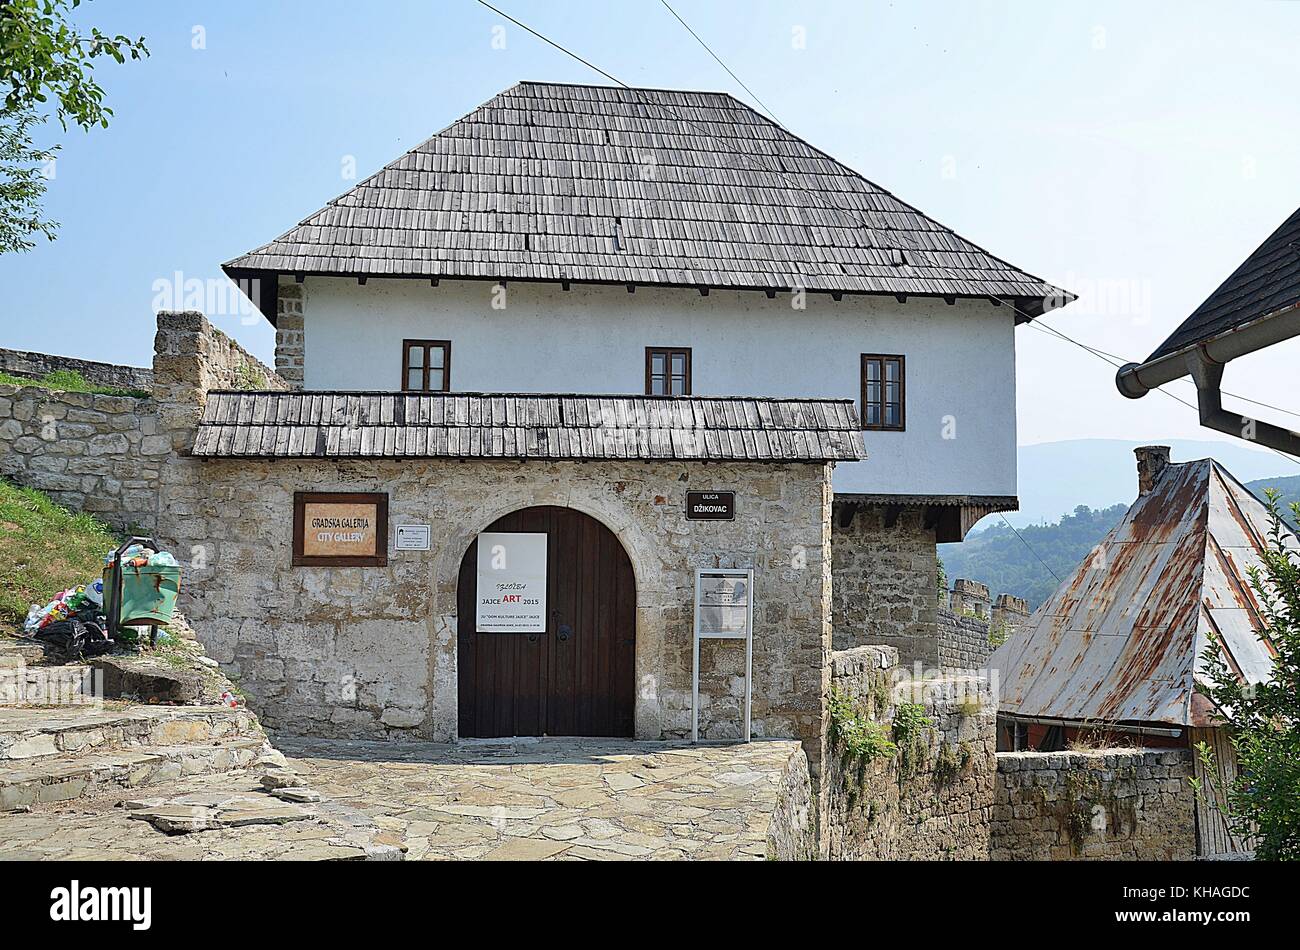 Mittelalterliche Altstadt von Jajce, Bosnien und Herzegowina Stockfoto